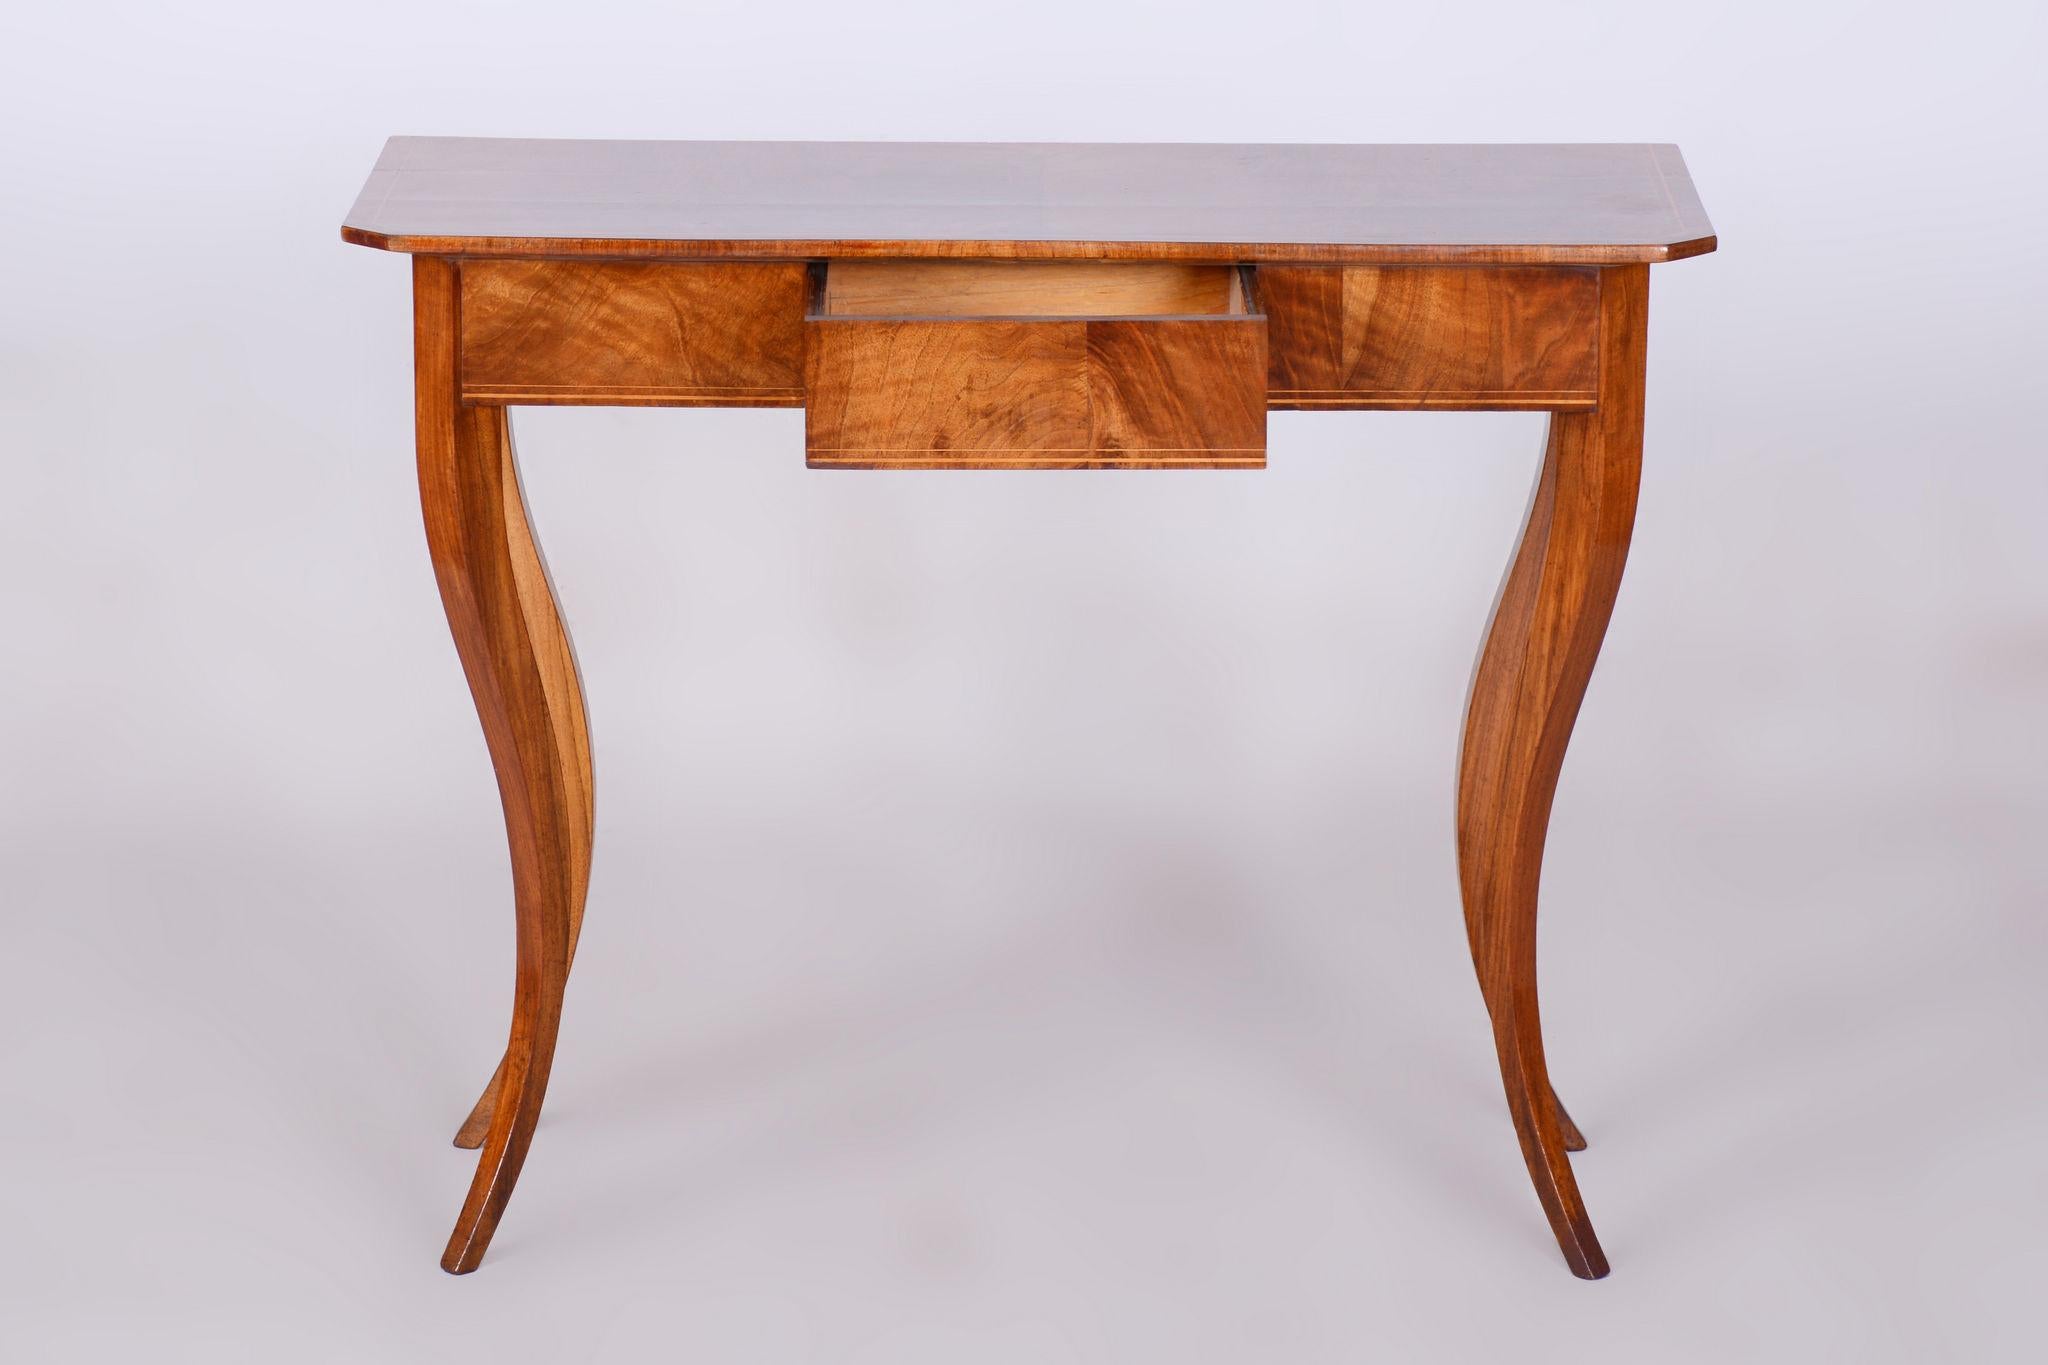 Austrian Restored Small Biedermeier Side Table, Walnut, Spruce, Maple, Austria, 1820s